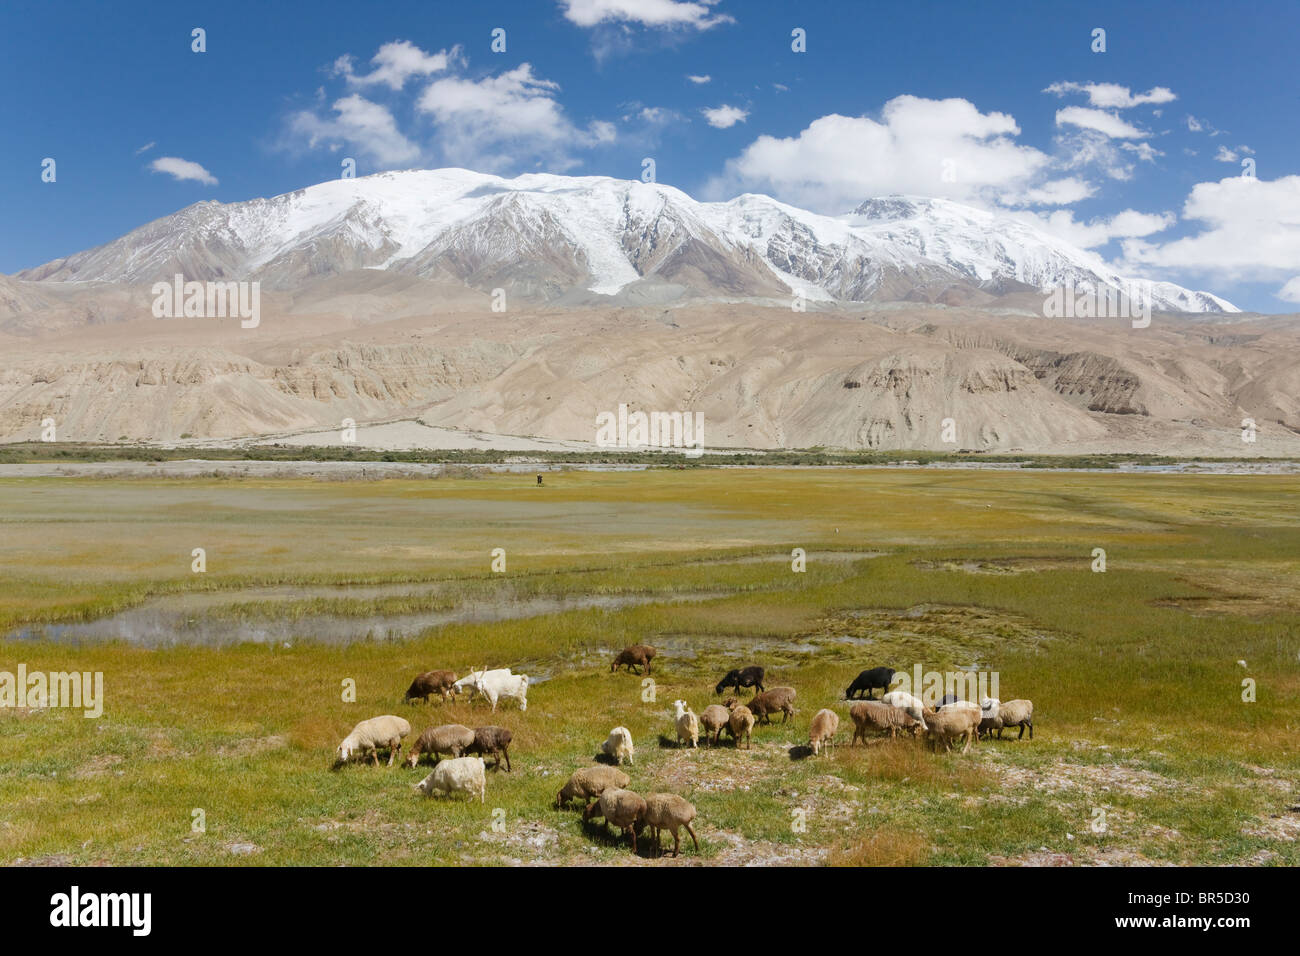 Le pâturage de moutons et de yaks sur le pré, Mt. Dans la distance, Kunlun Plateau du Pamir, Xinjiang, Chine Banque D'Images